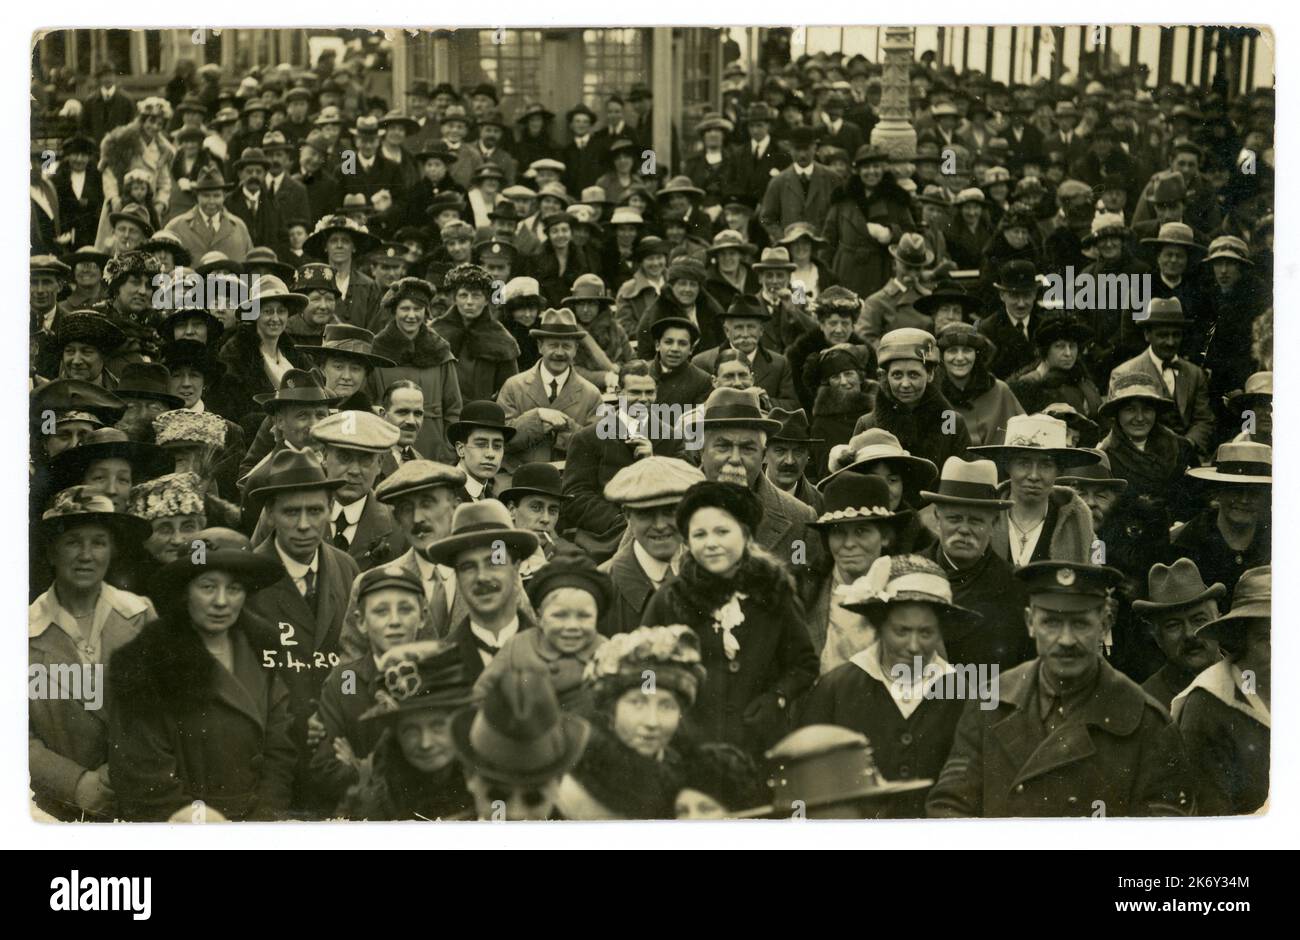 La foule originale de vacances en classe ouvrière de l'époque des années 1920 date du 5 avril 1920, station balnéaire britannique, beaucoup de personnages et de mode, y compris des casquettes plates et des chapeaux homburg. ROYAUME-UNI Banque D'Images